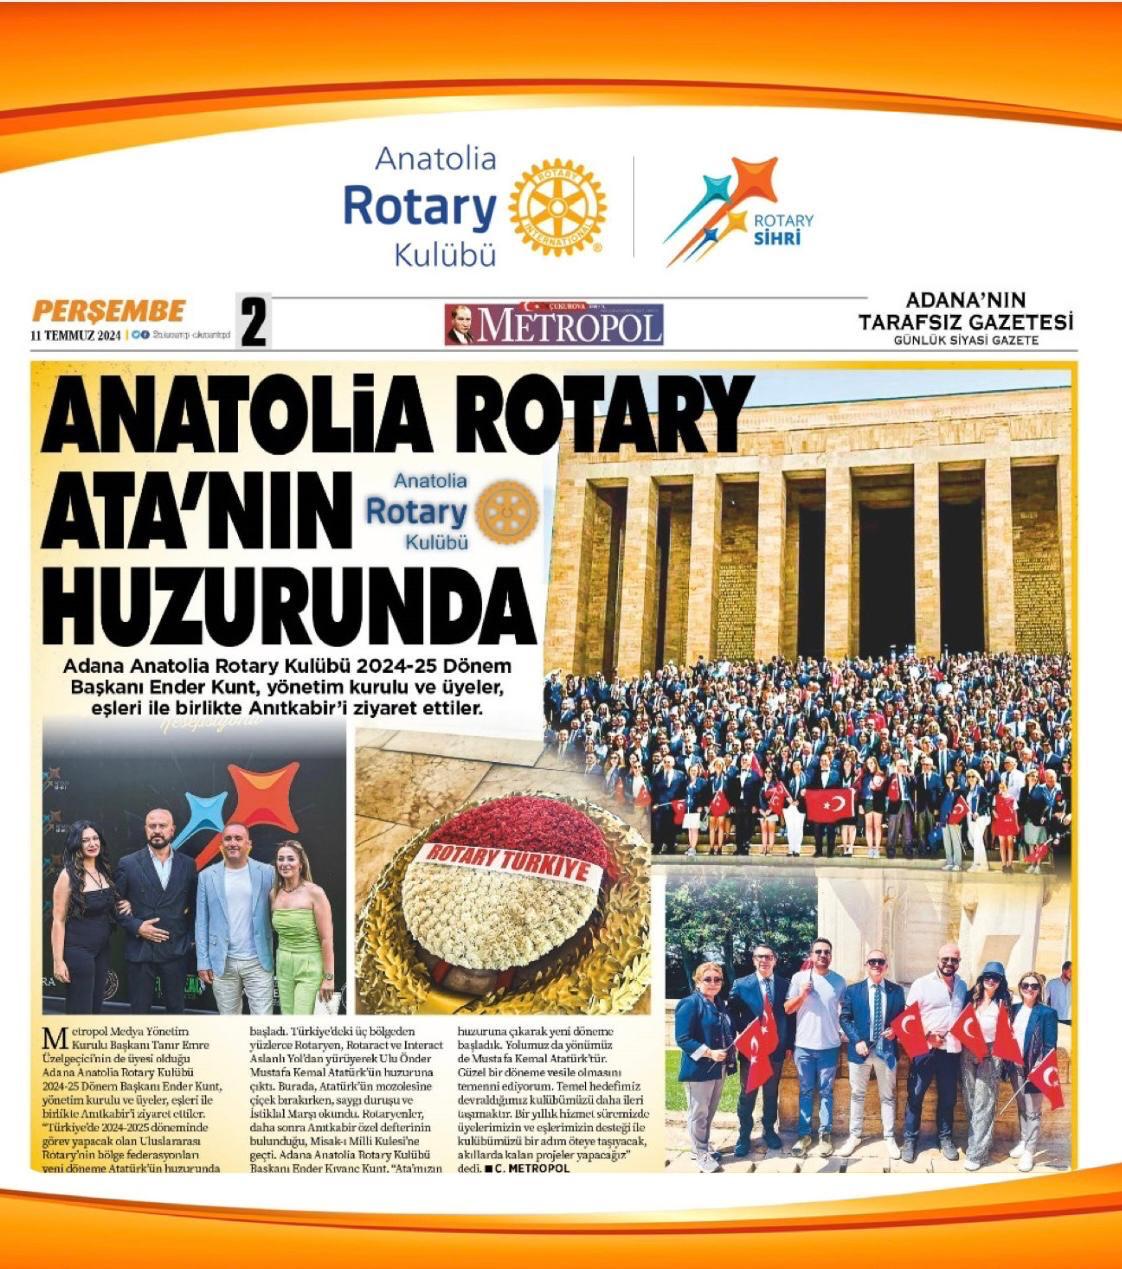 Anatolia Rotary Anıtkabir Ziyareti